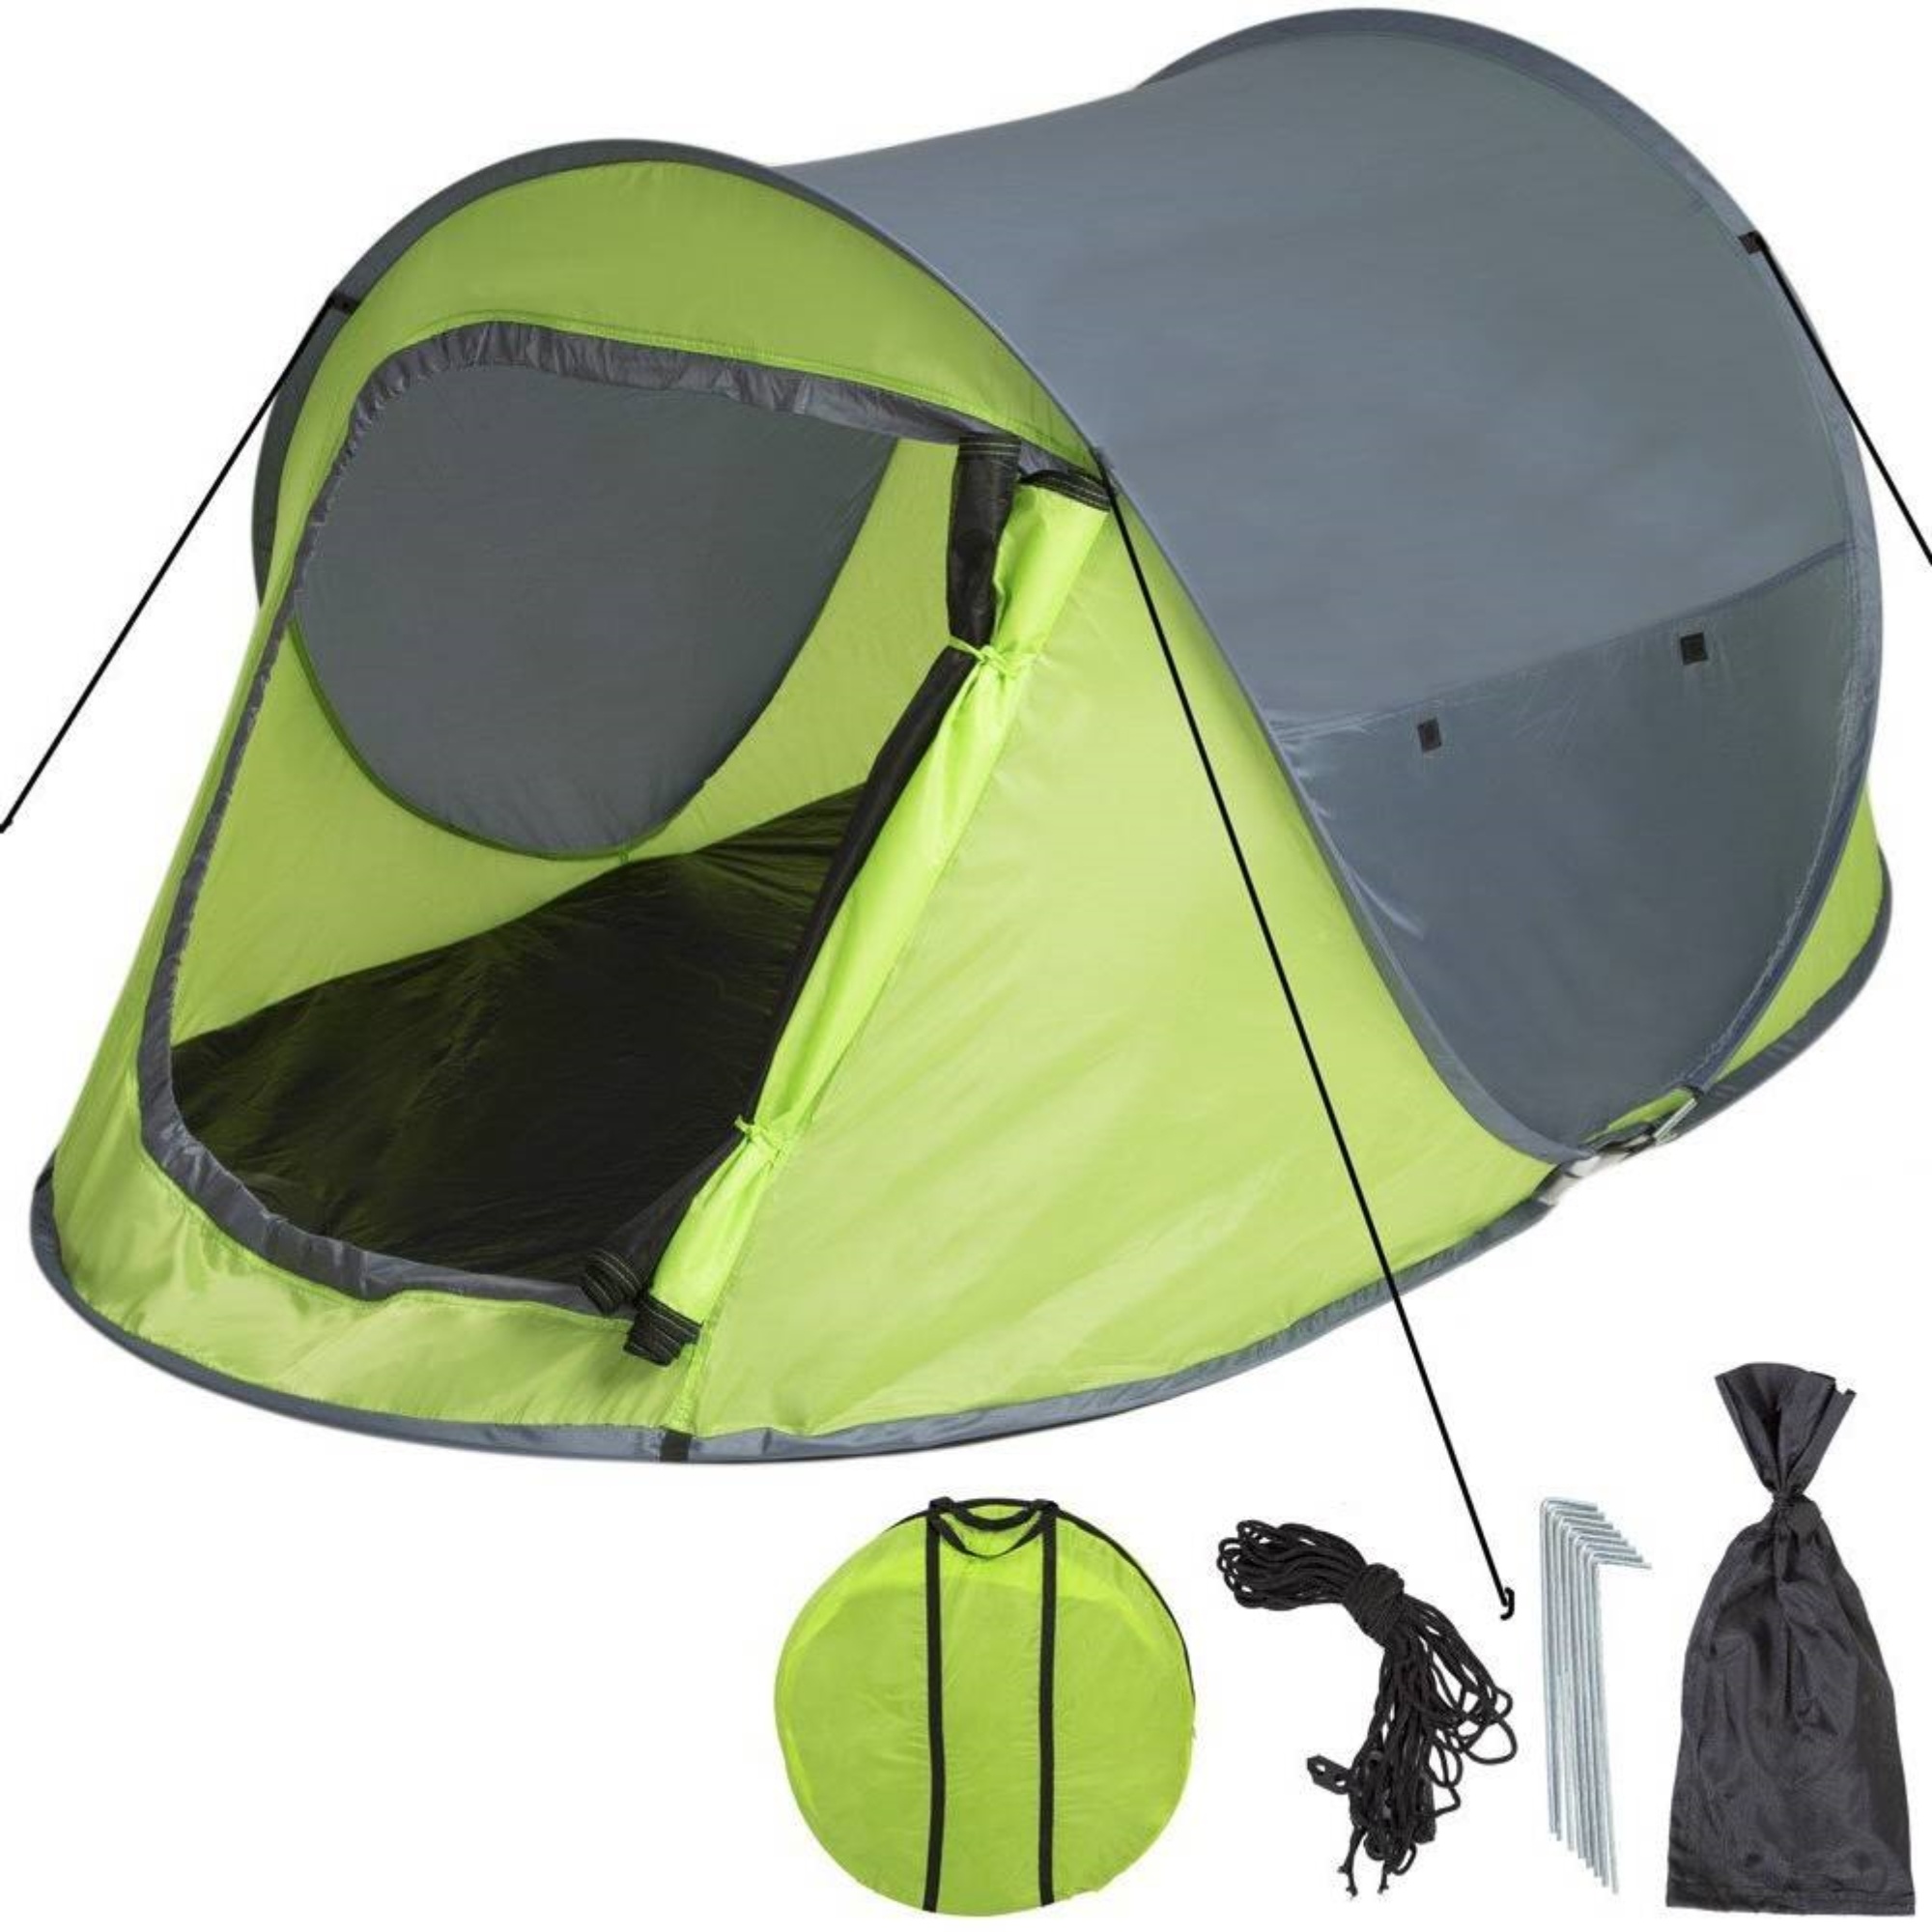 Lastpak Pop-up Tent 245 x 145 x 95cm Waterdicht & UV Beschermd kopen? -  2Cheap